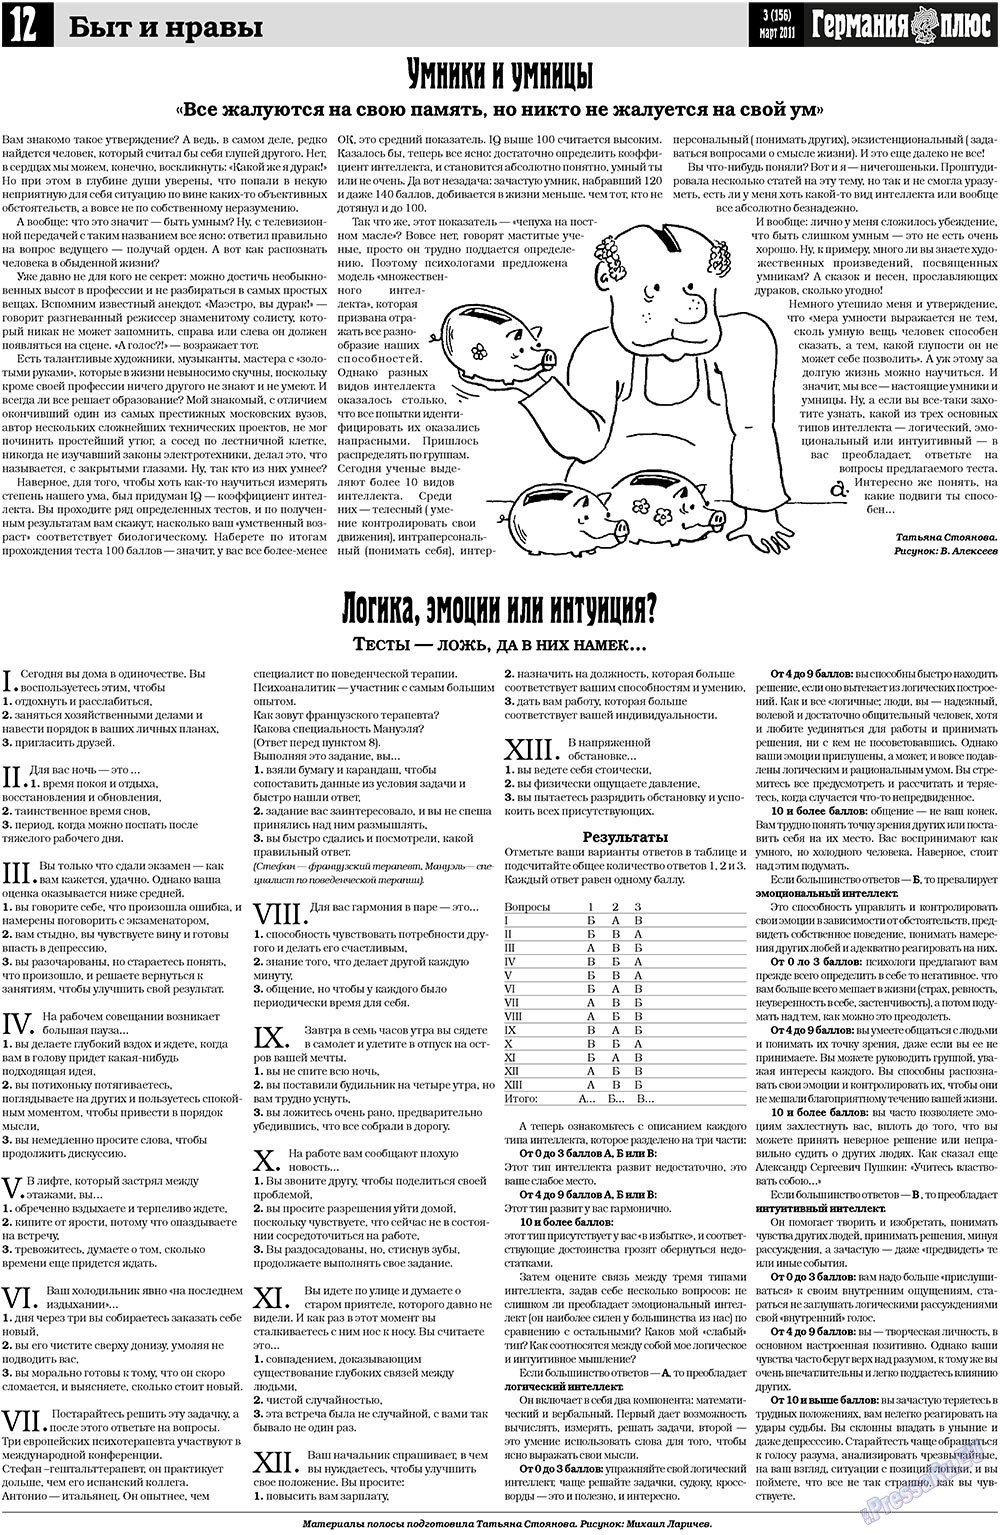 Германия плюс, газета. 2011 №3 стр.12